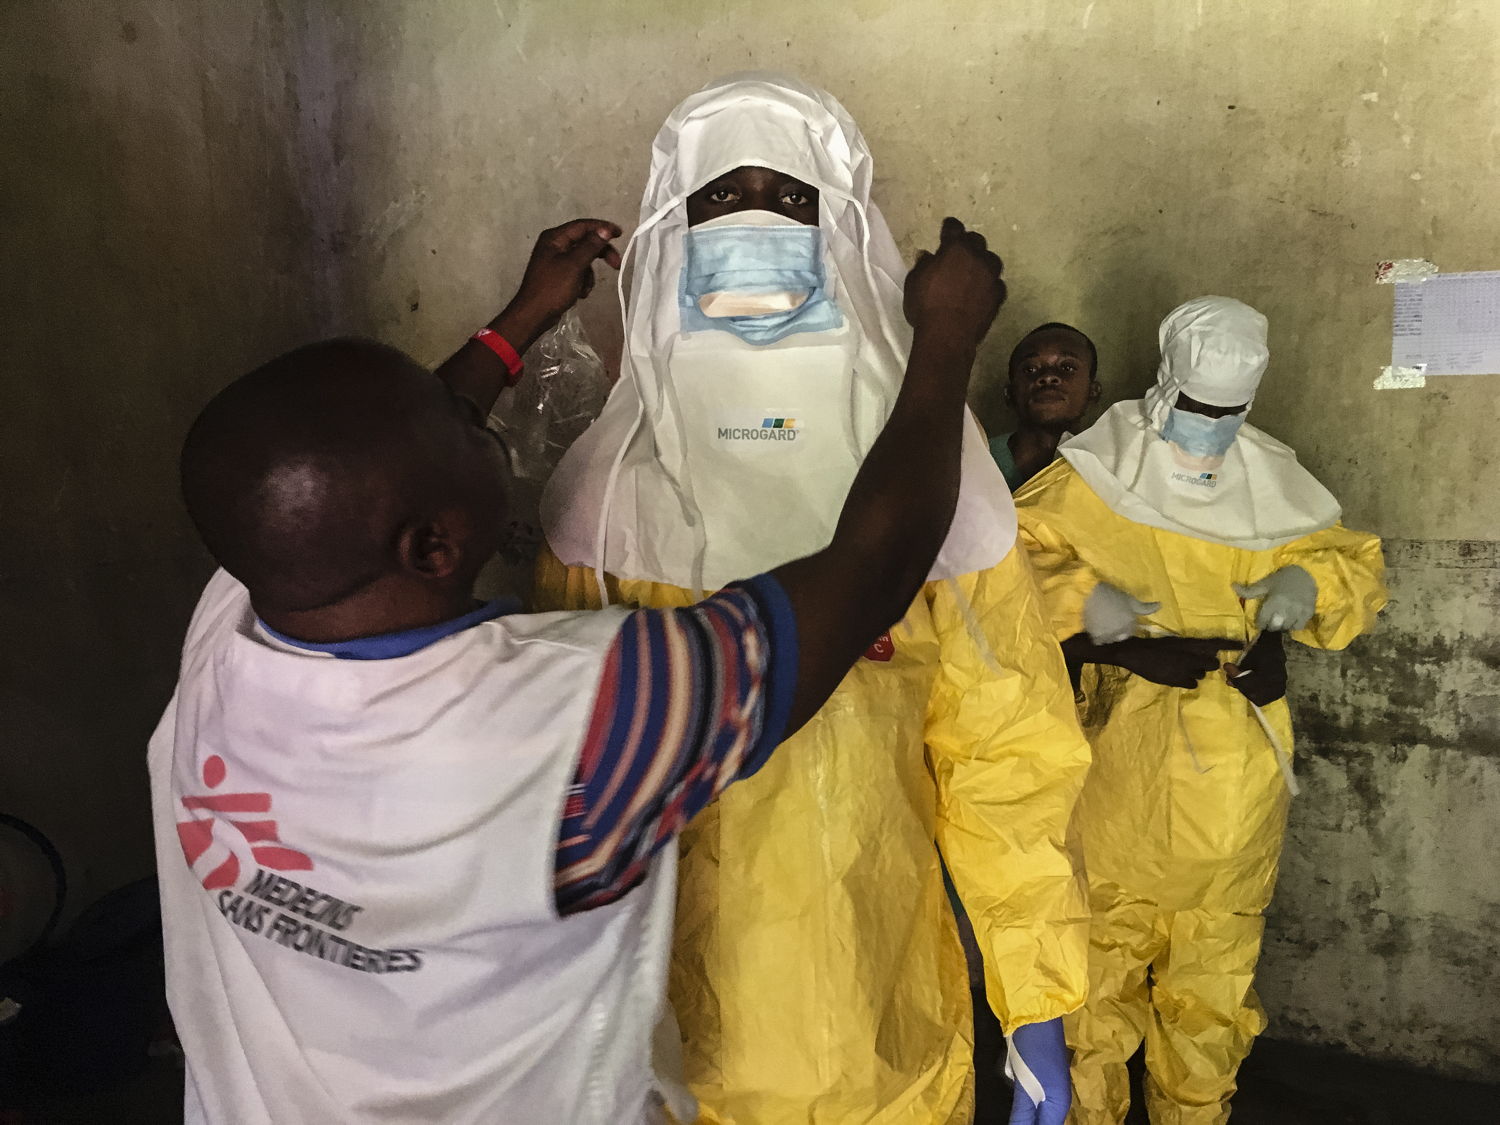 Trabajadores humanitarios de MSF se visten con el equipo de protección personal en el Centro de tratamiento de Ébola de Bikoro © Hugues Robert/MSF